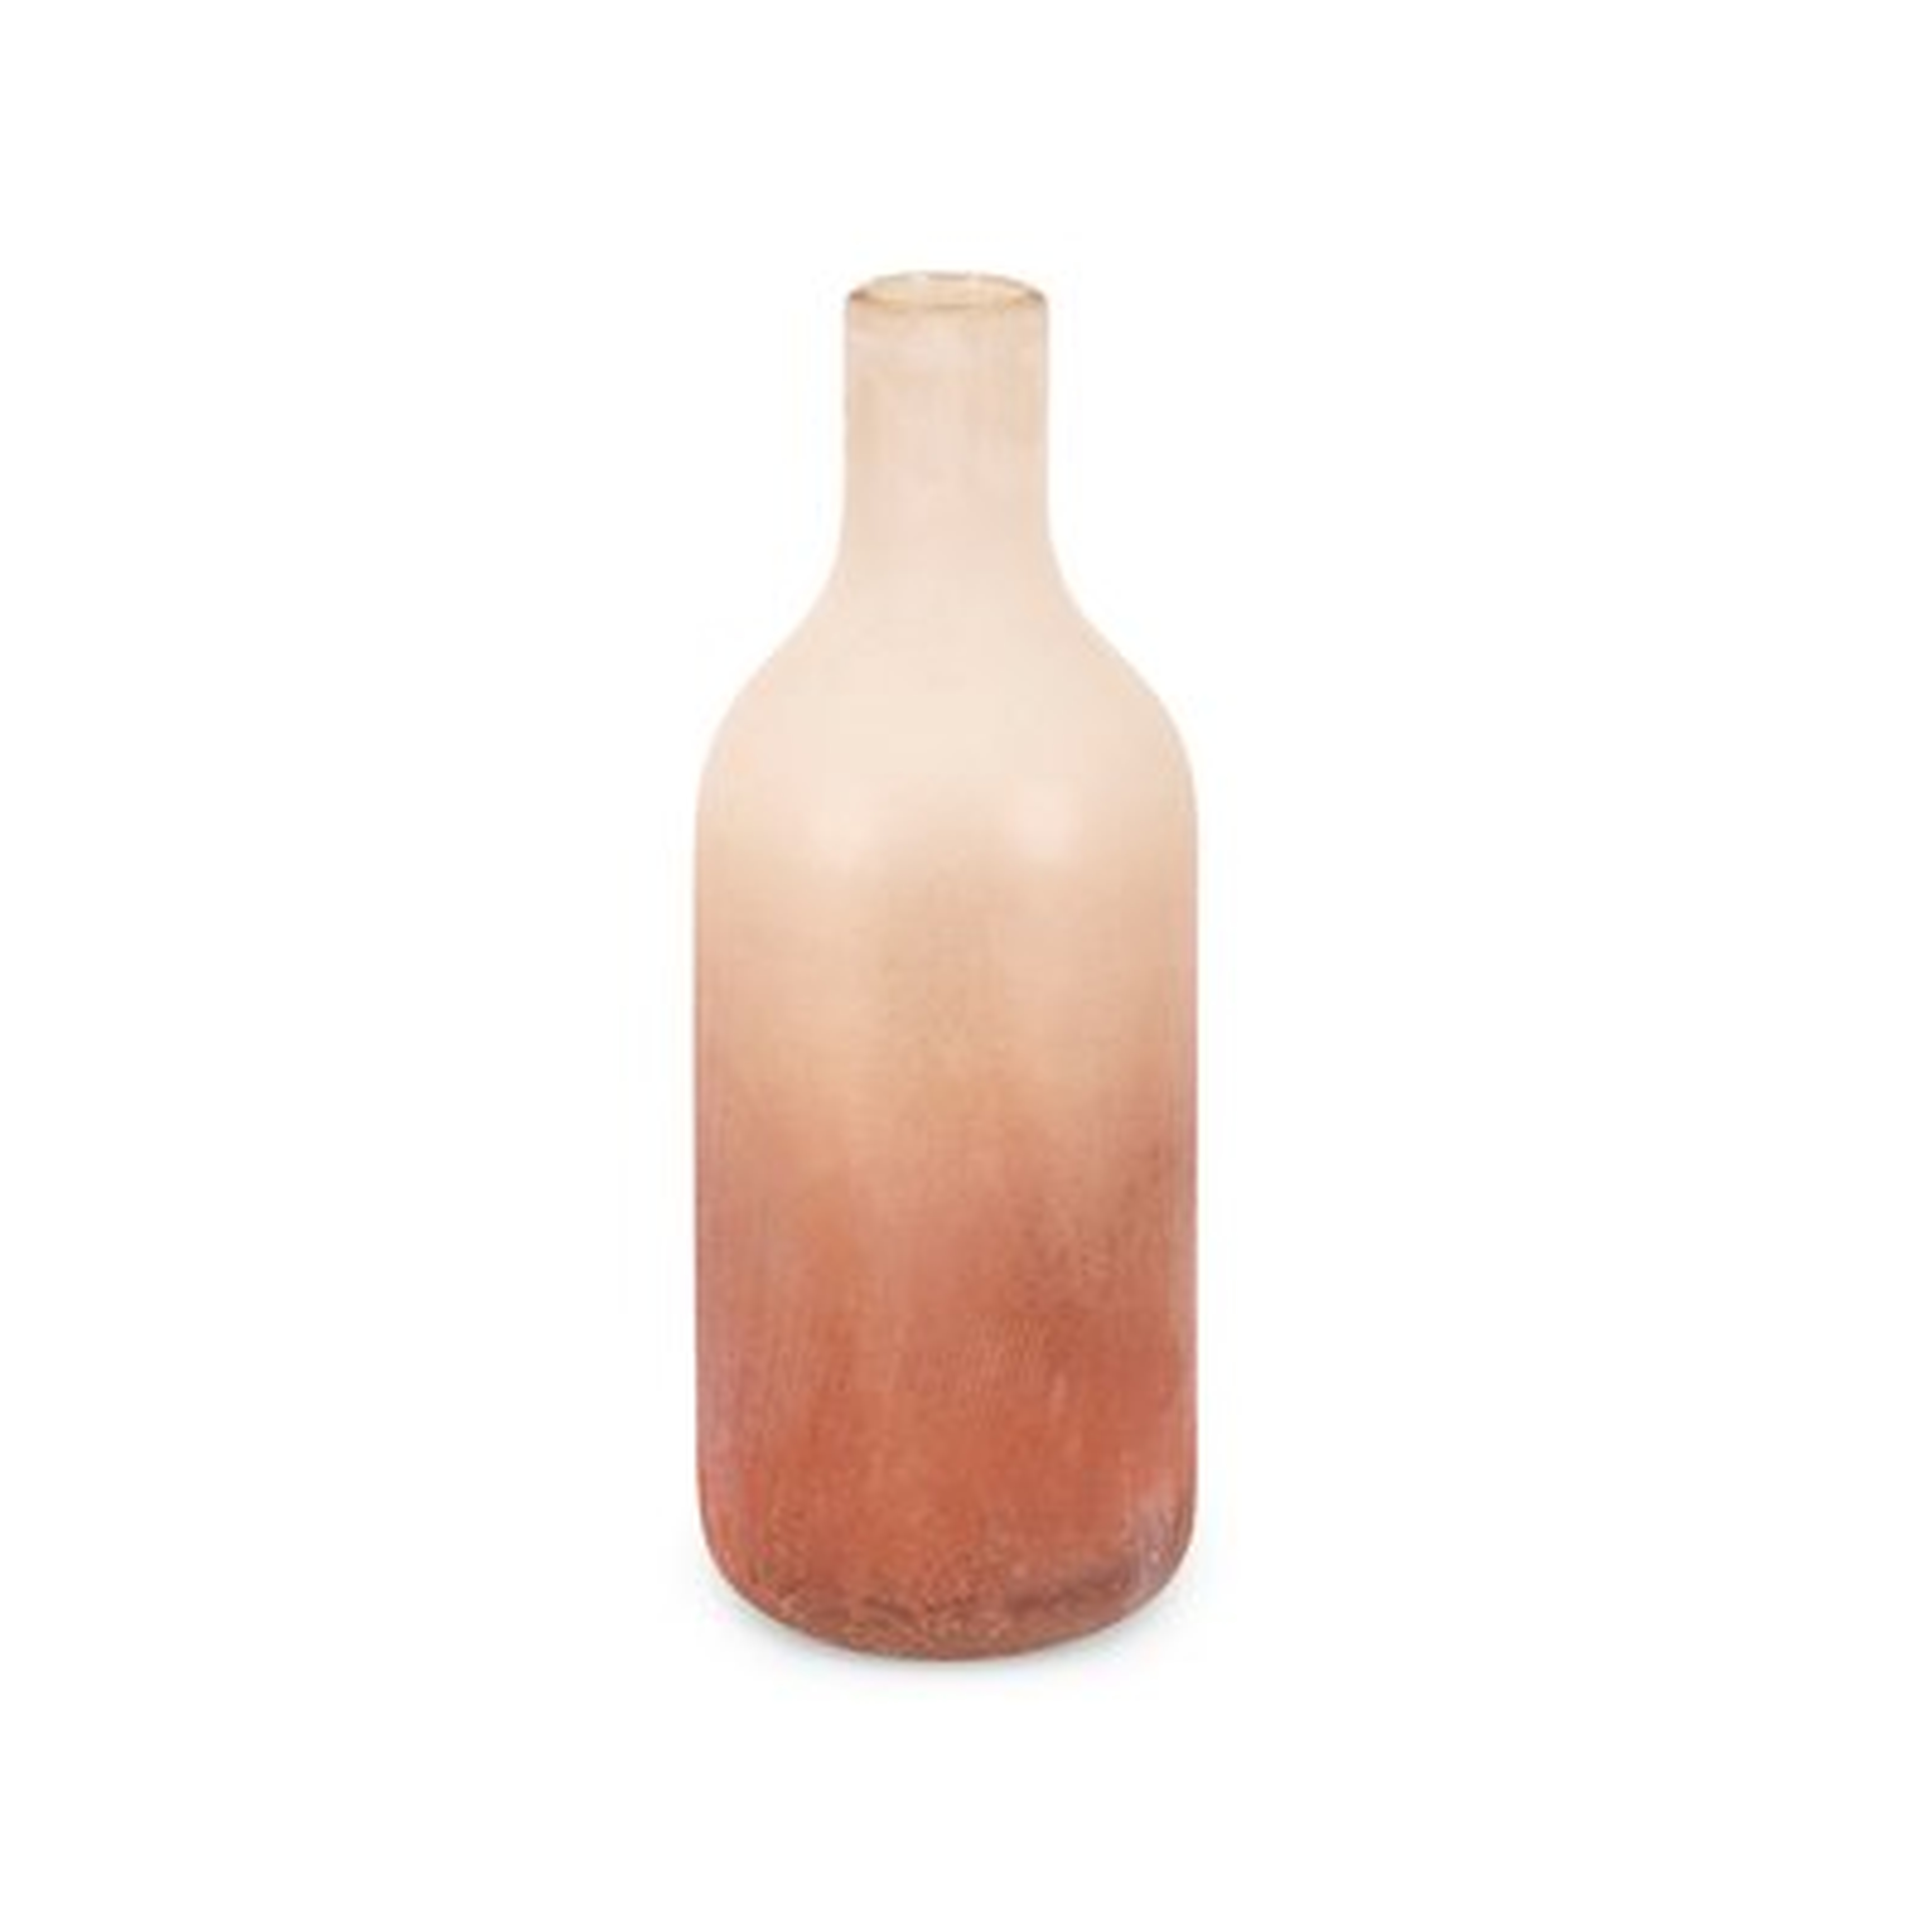 Garson Glass Bottle Table Vase - Wayfair